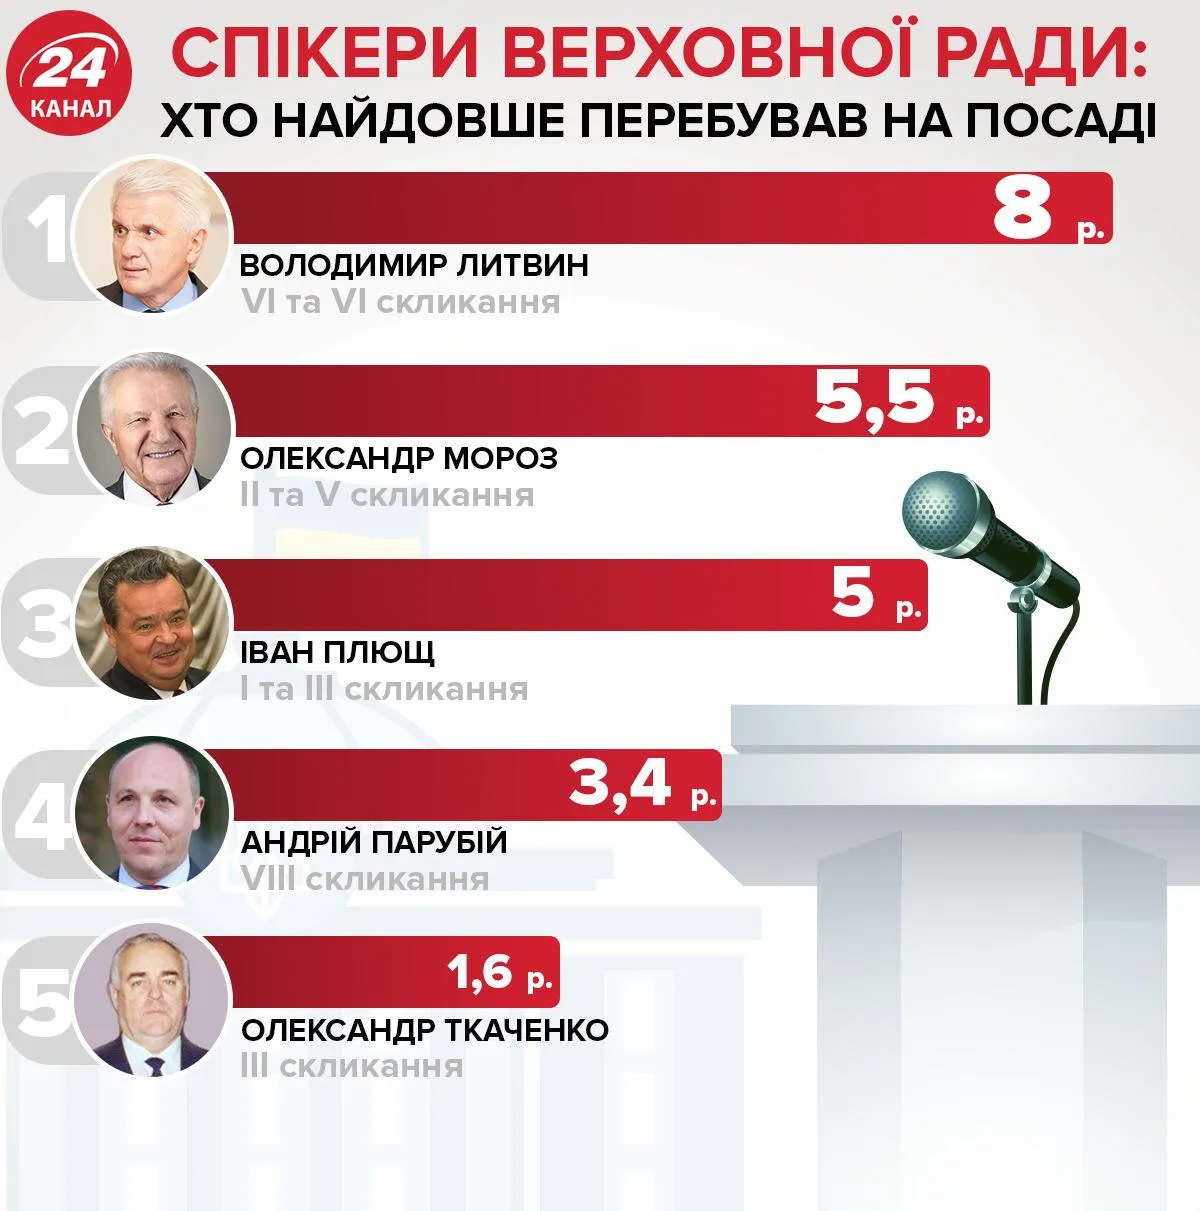 Хто найдовше перебував на посаді спікера Верховної Ради